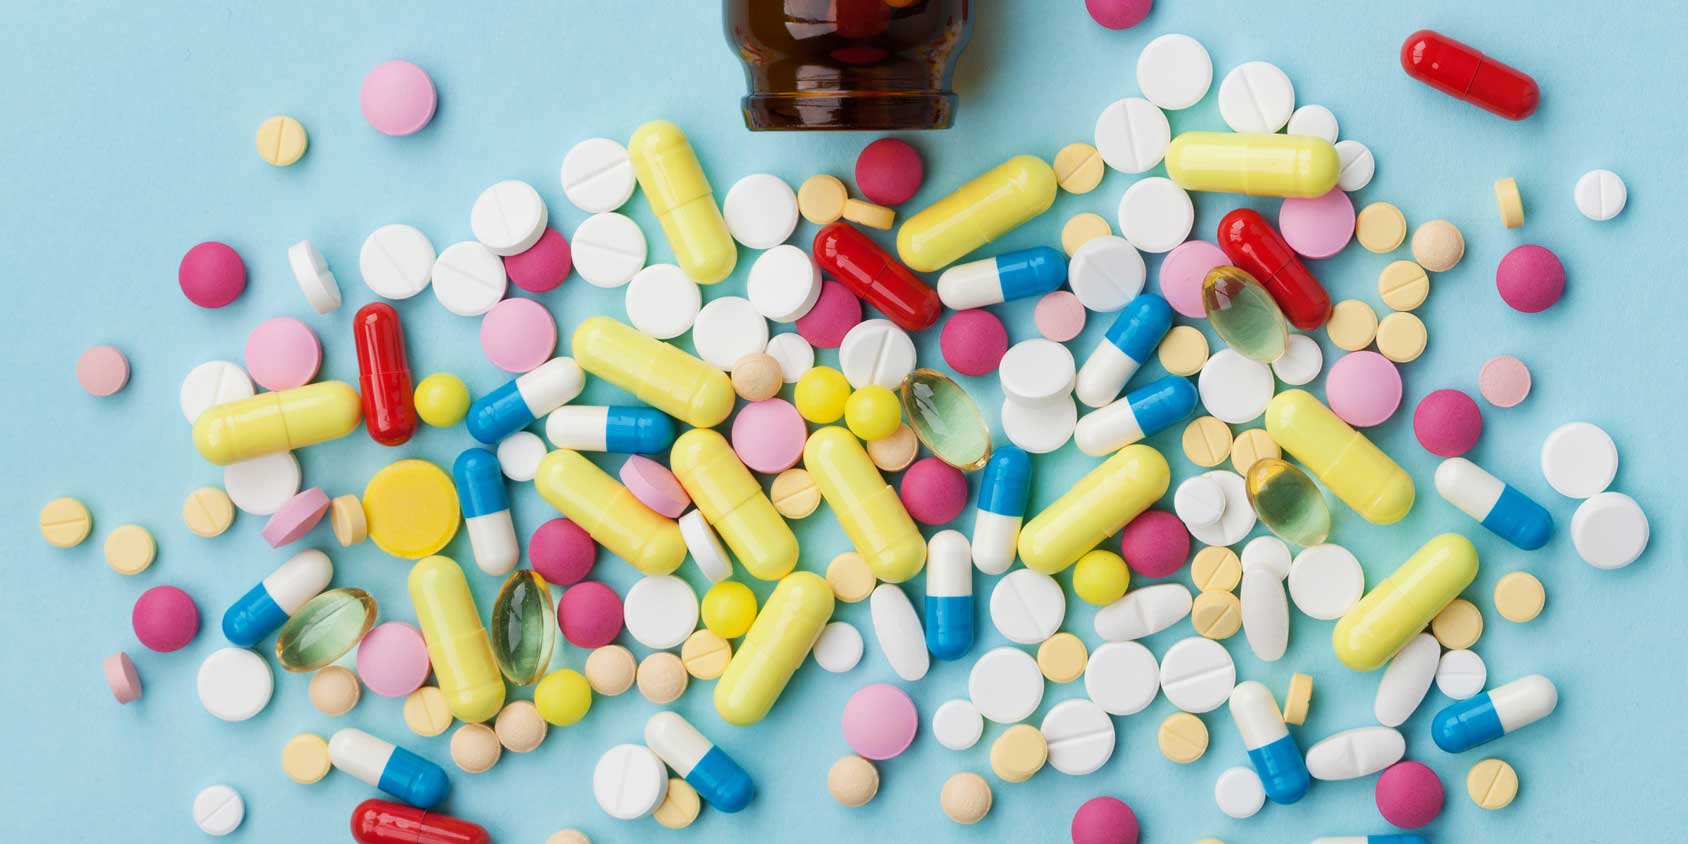 Pharma Finding New Ways to Kill Us